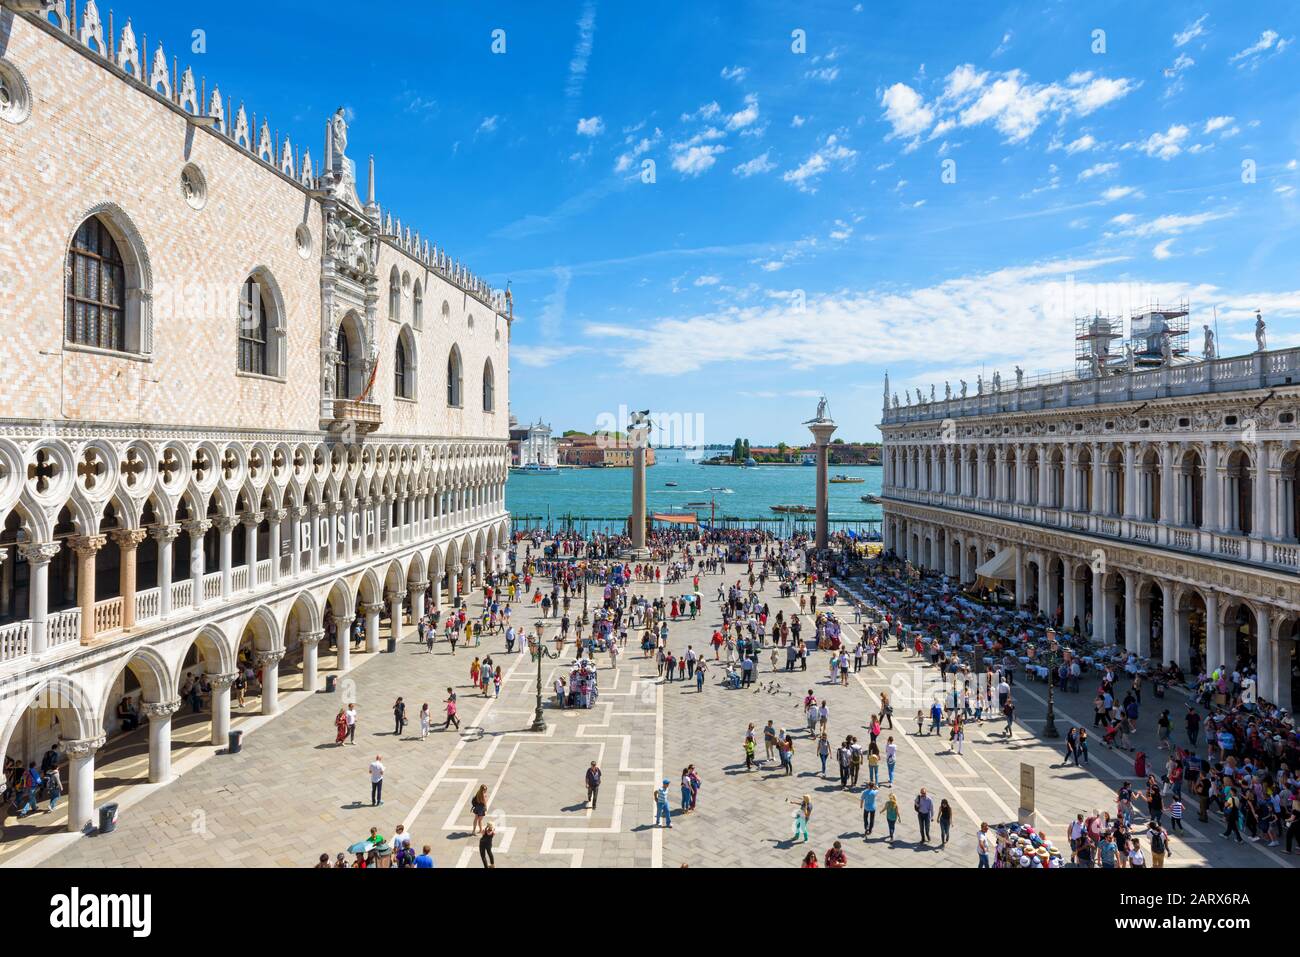 Venecia, Italia - 21 de mayo de 2017: Los turistas caminan alrededor de la Piazza San Marco, o la Plaza de San Marcos. El famoso Palacio Ducal a la izquierda. Esta es la s principal Foto de stock